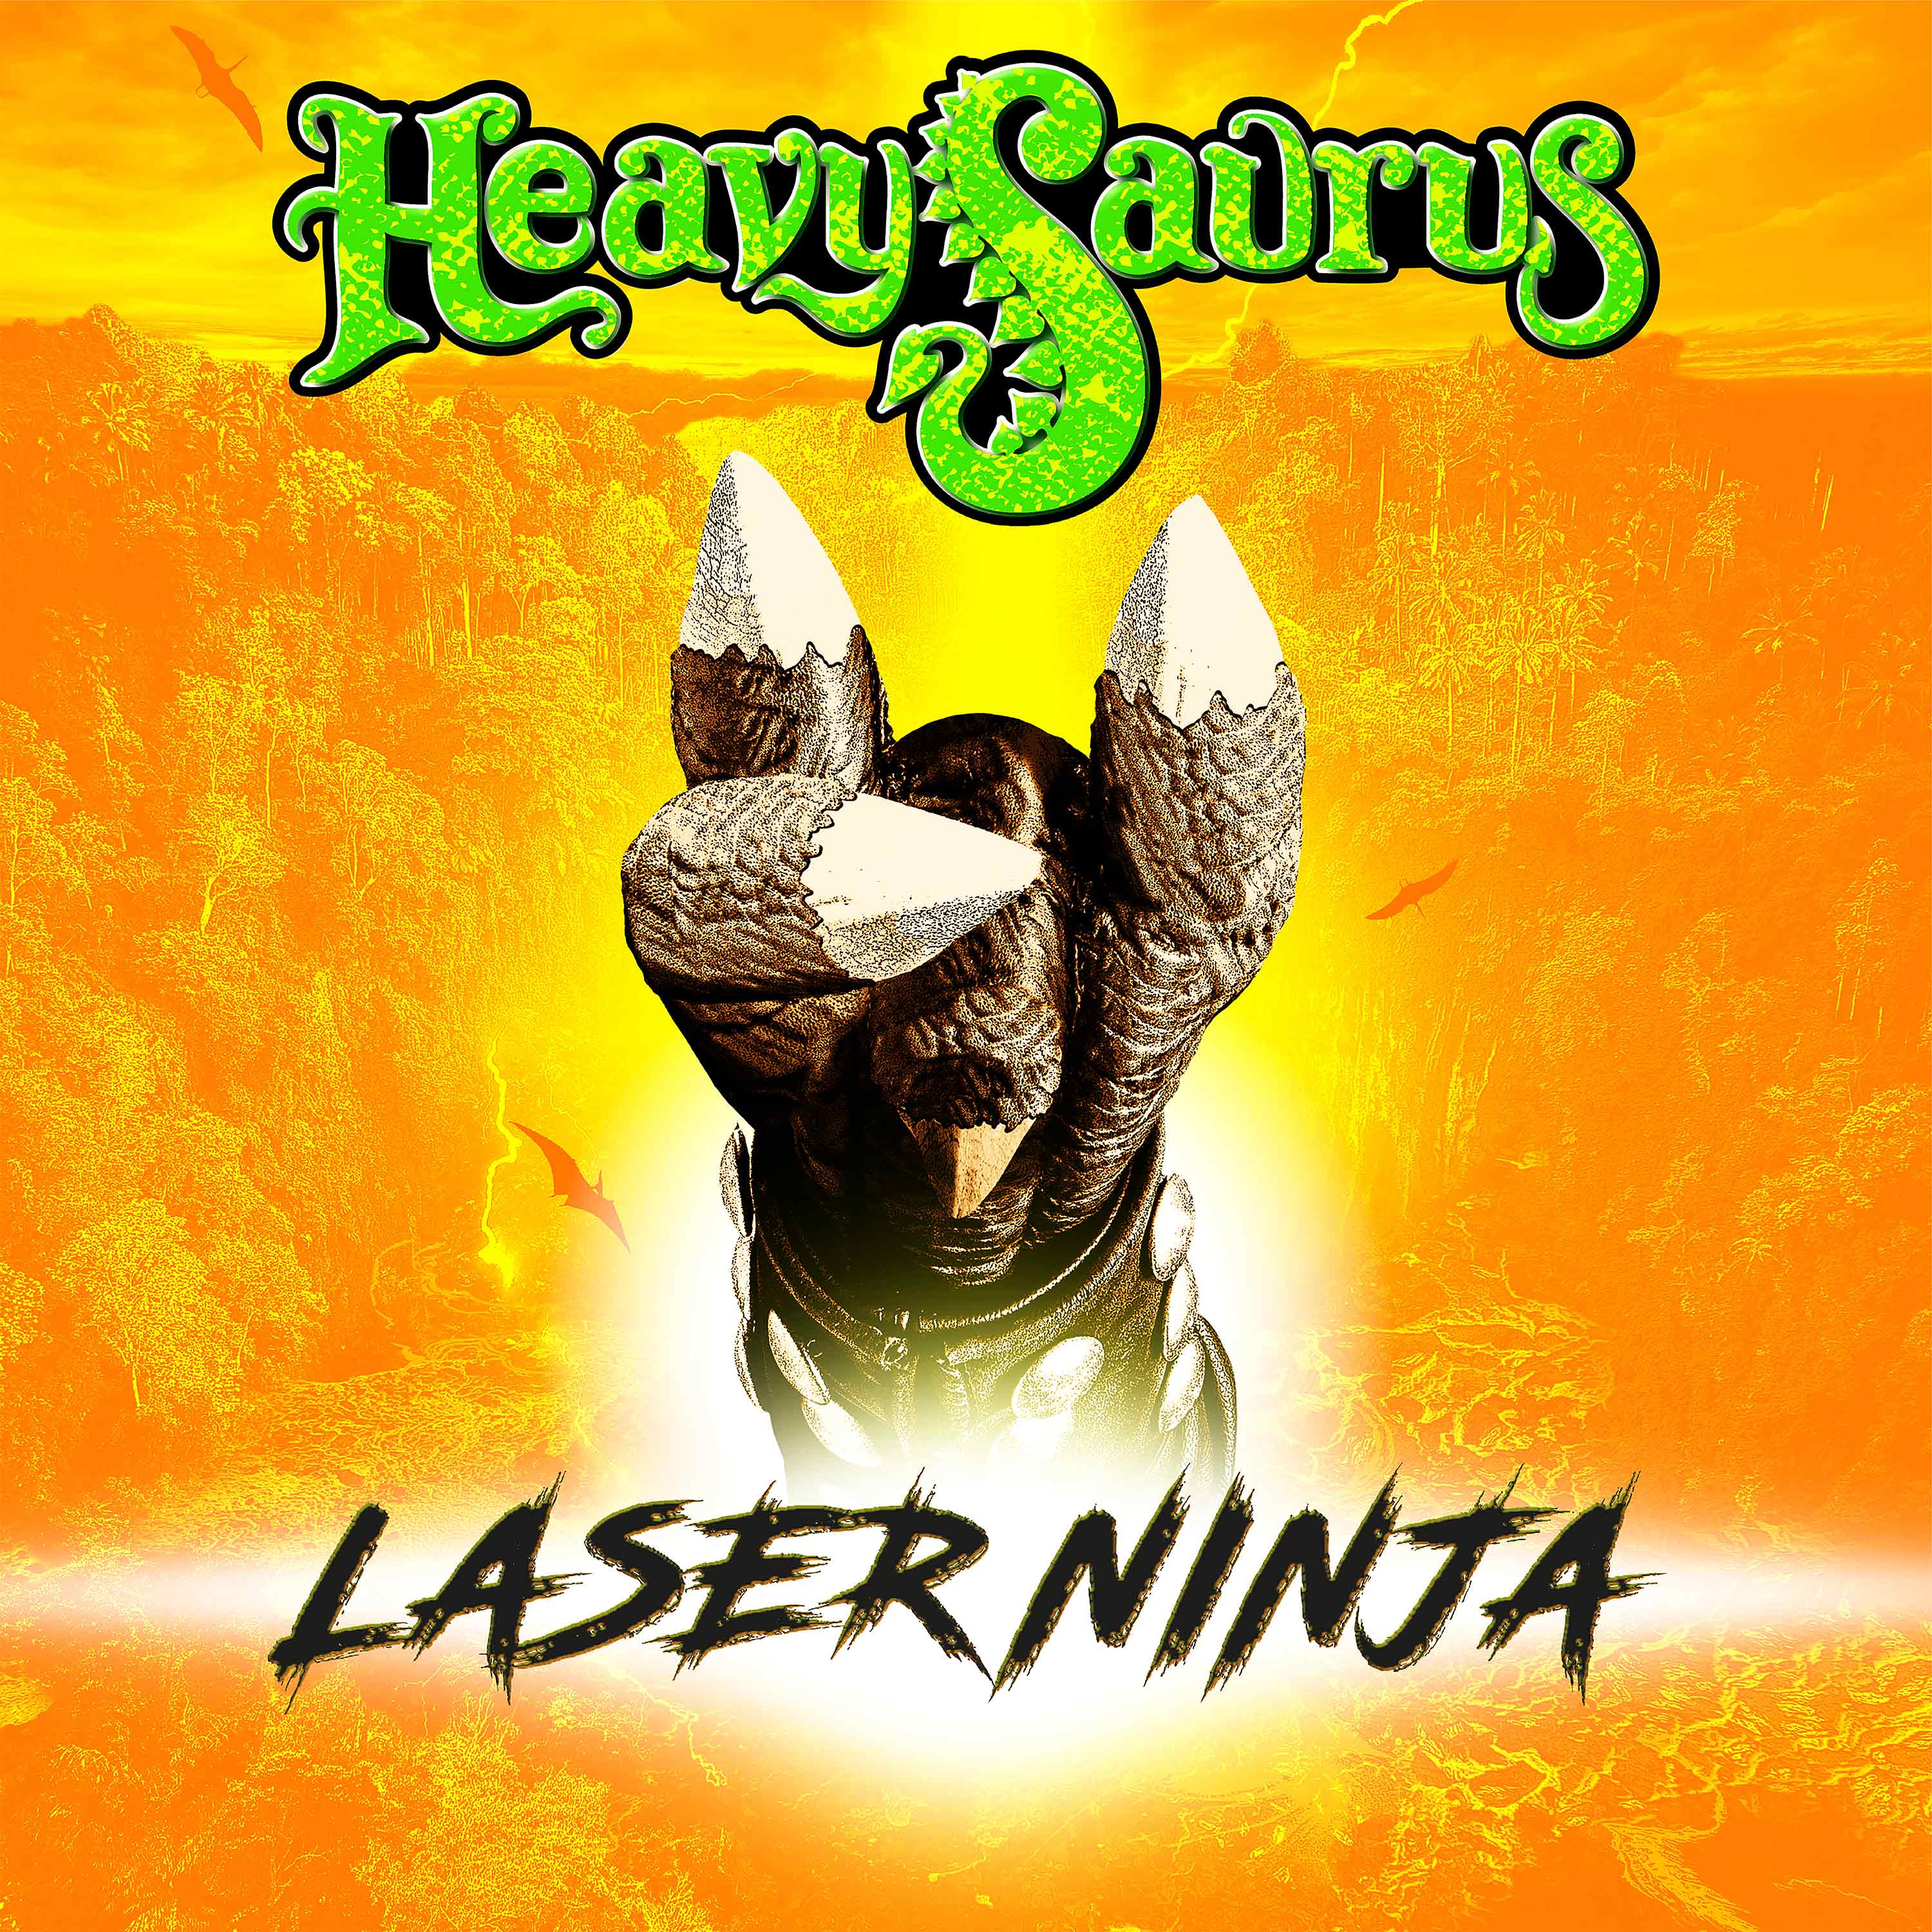 Heavysaurus - Laser Ninja